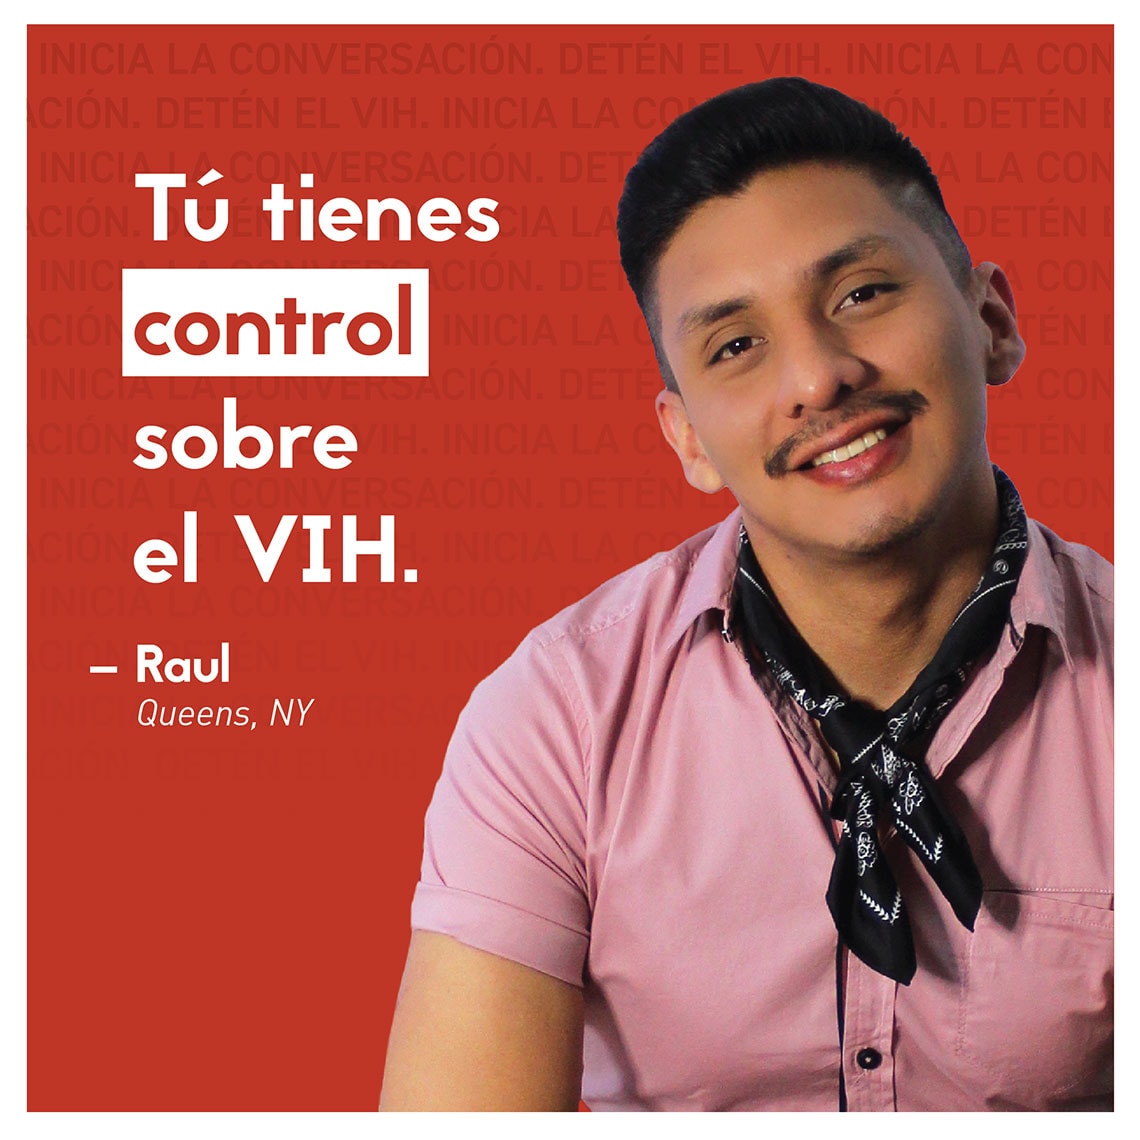 Imagen de un hombre sonriendo: Tú tienes control sobre el VIH. - Raul   Queens, NY